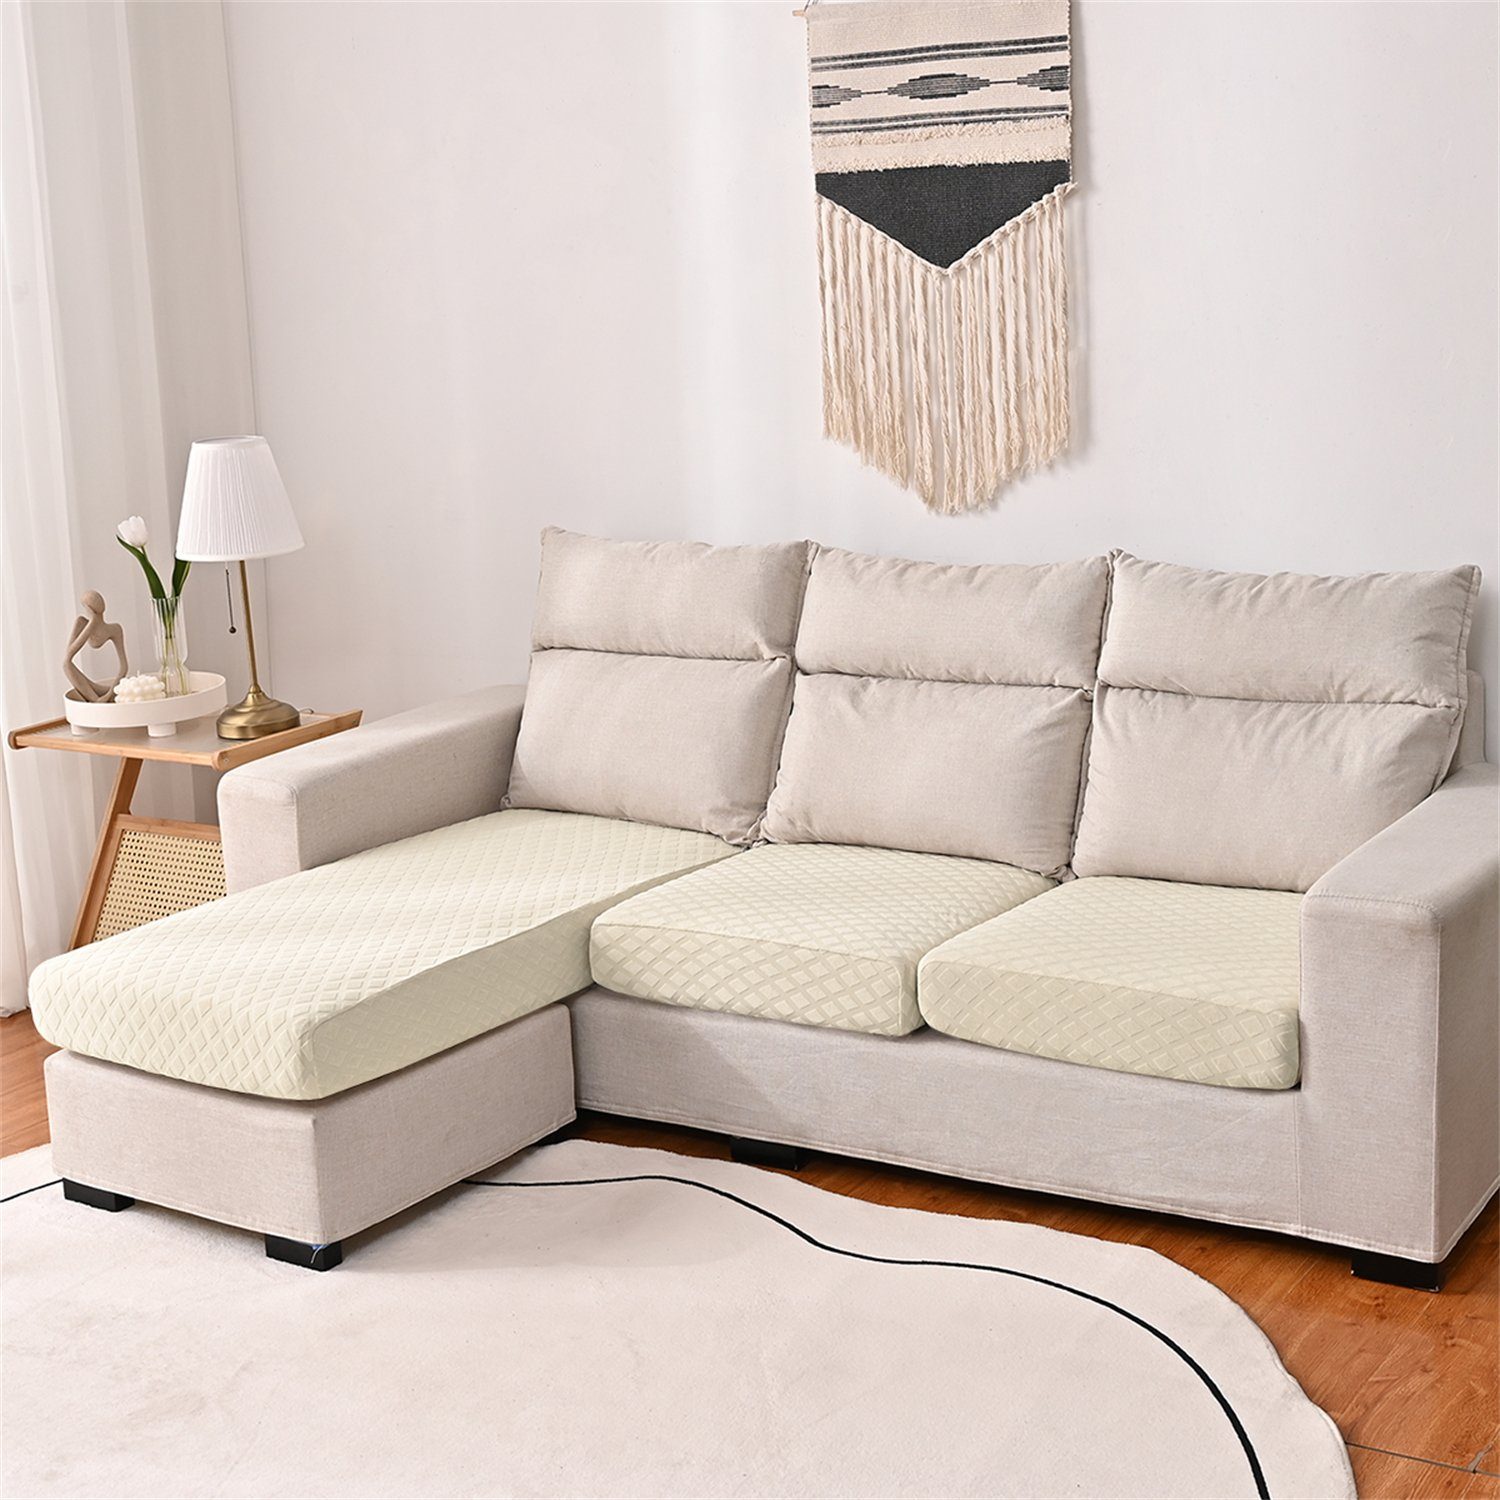 Sofahusse, HOMEIDEAS, wasserfest elastischer Sofa-Sitzbezug mit 3DMuster Beige